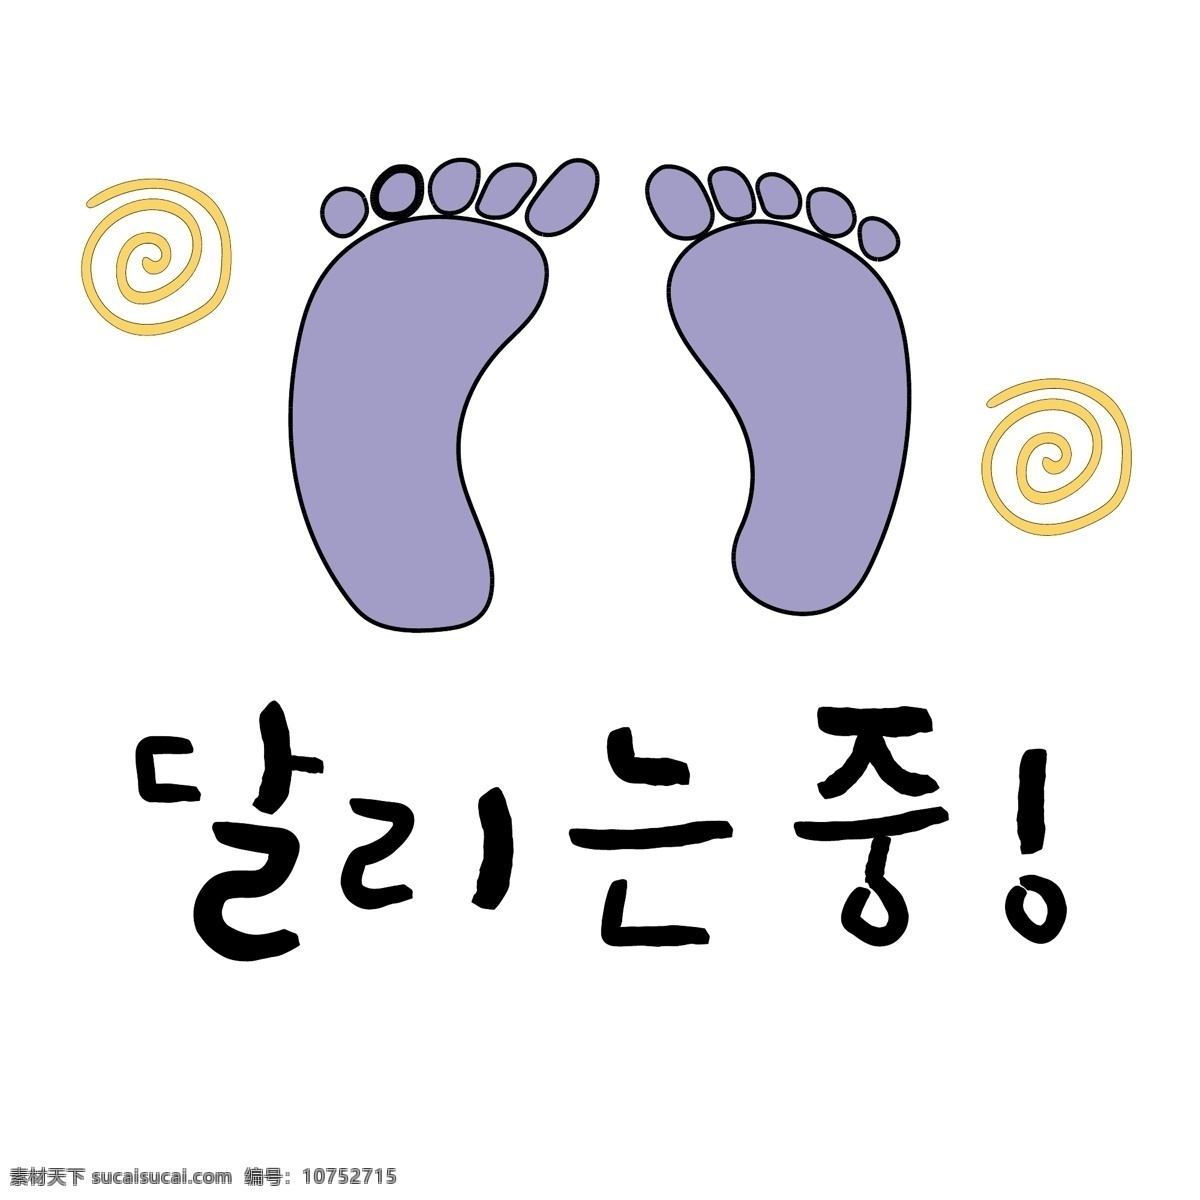 脚 上 奔跑 韩国 商 用语 肝药 和尚 对话 漫画 脚印 小的 向量 日常用语 紫色 卡通